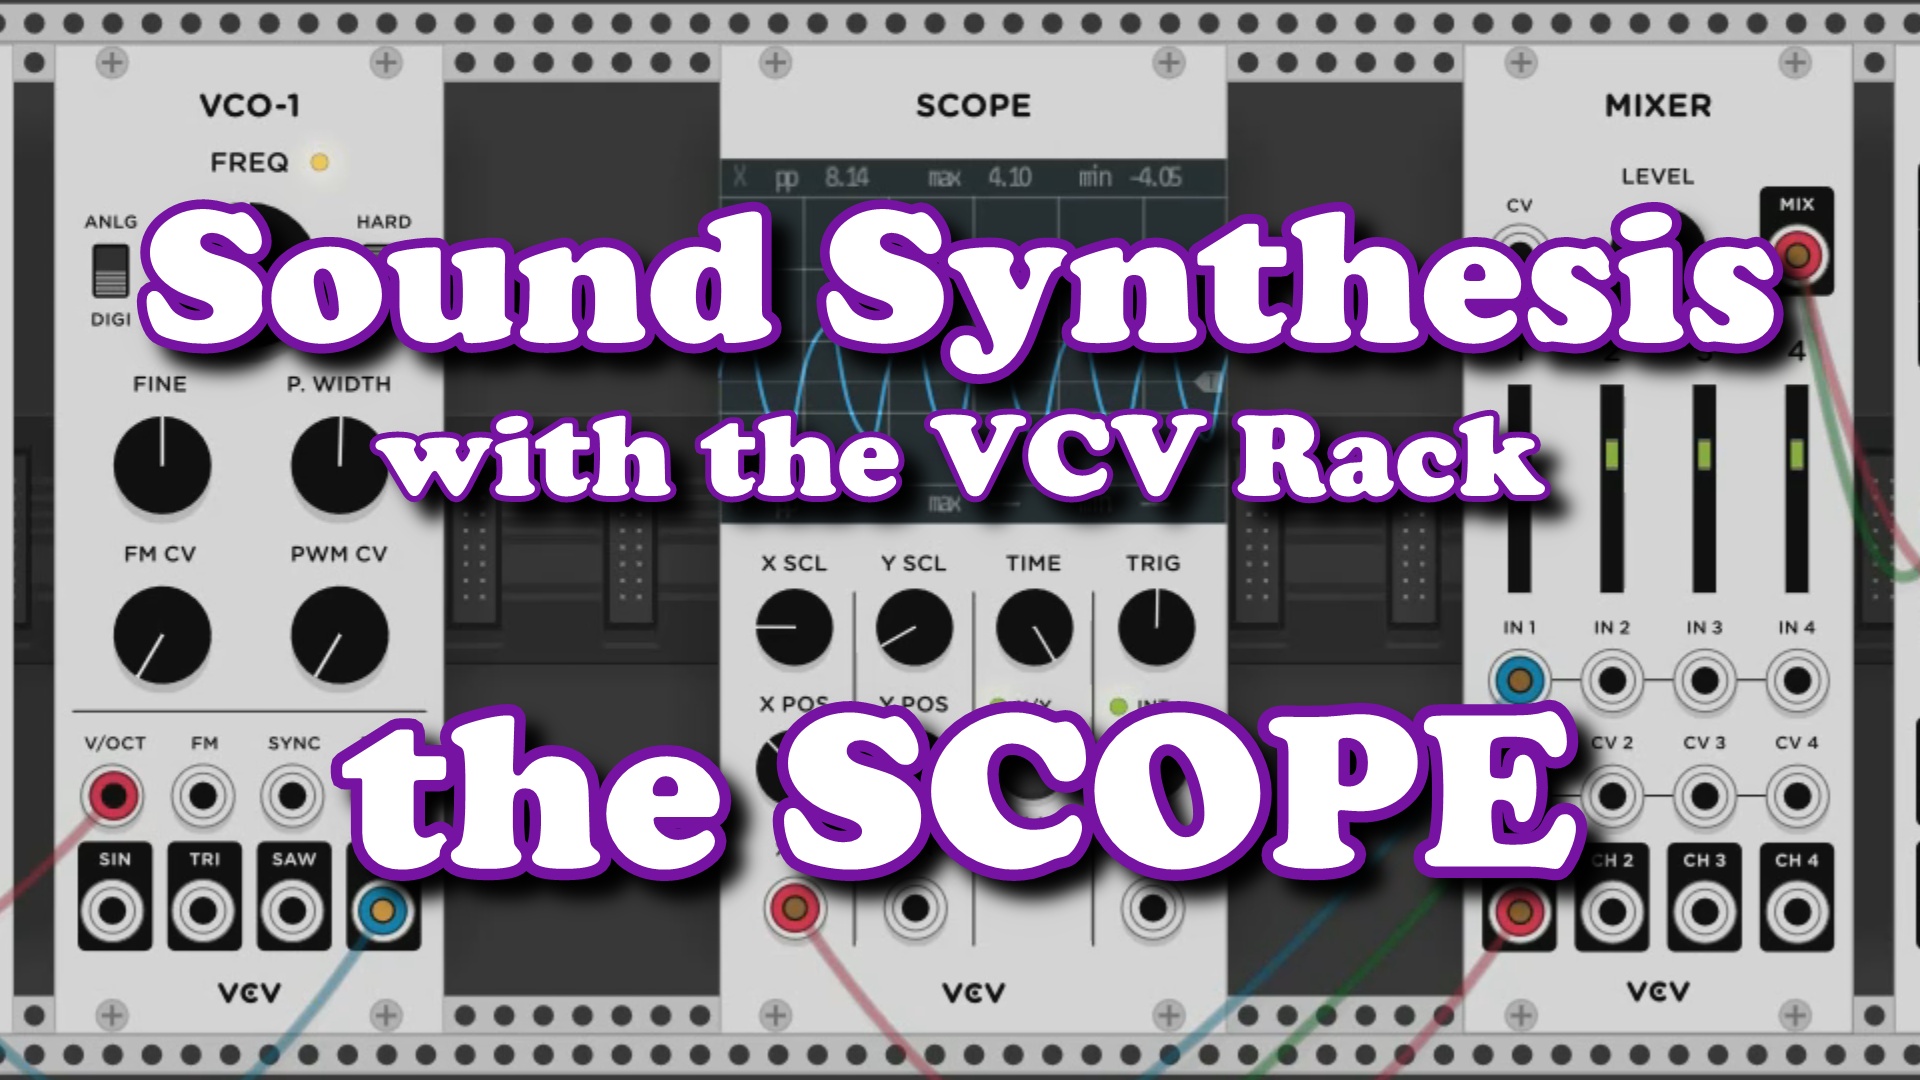 VCV 003 SCOPE screenhsot